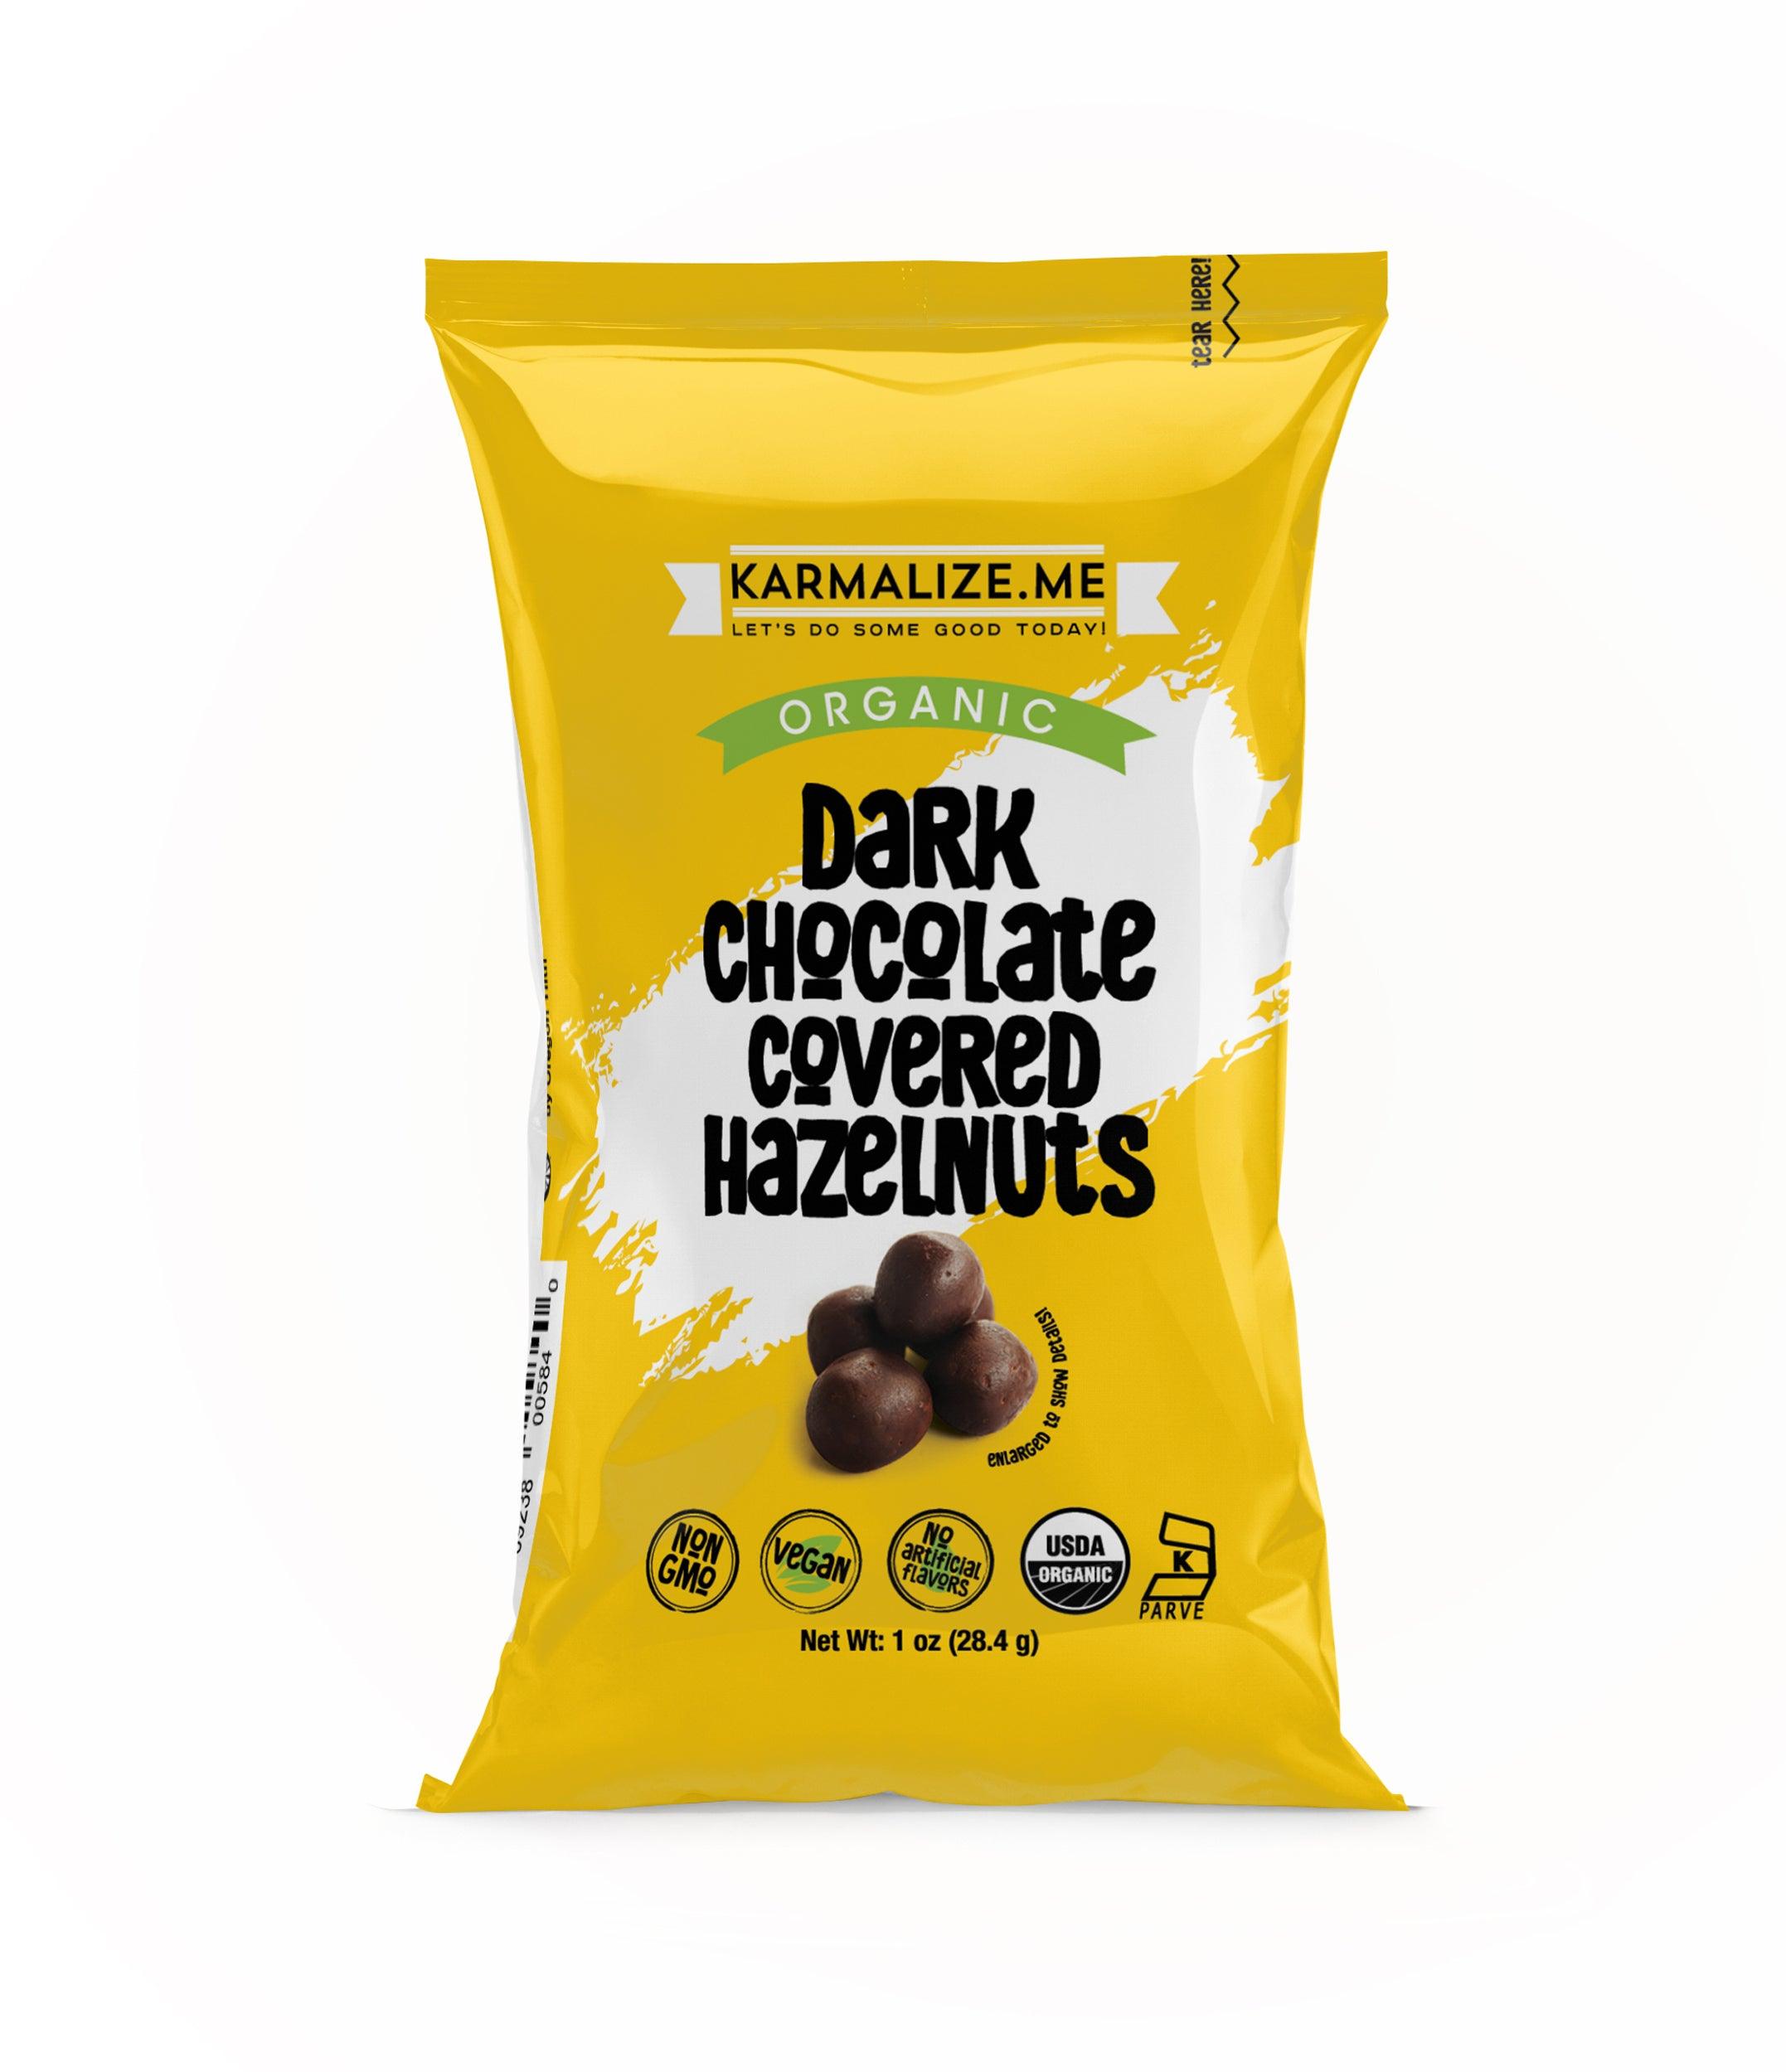 1 oz. Organic Vegan Dark Chocolate Covered Hazelnuts - Pack of 6